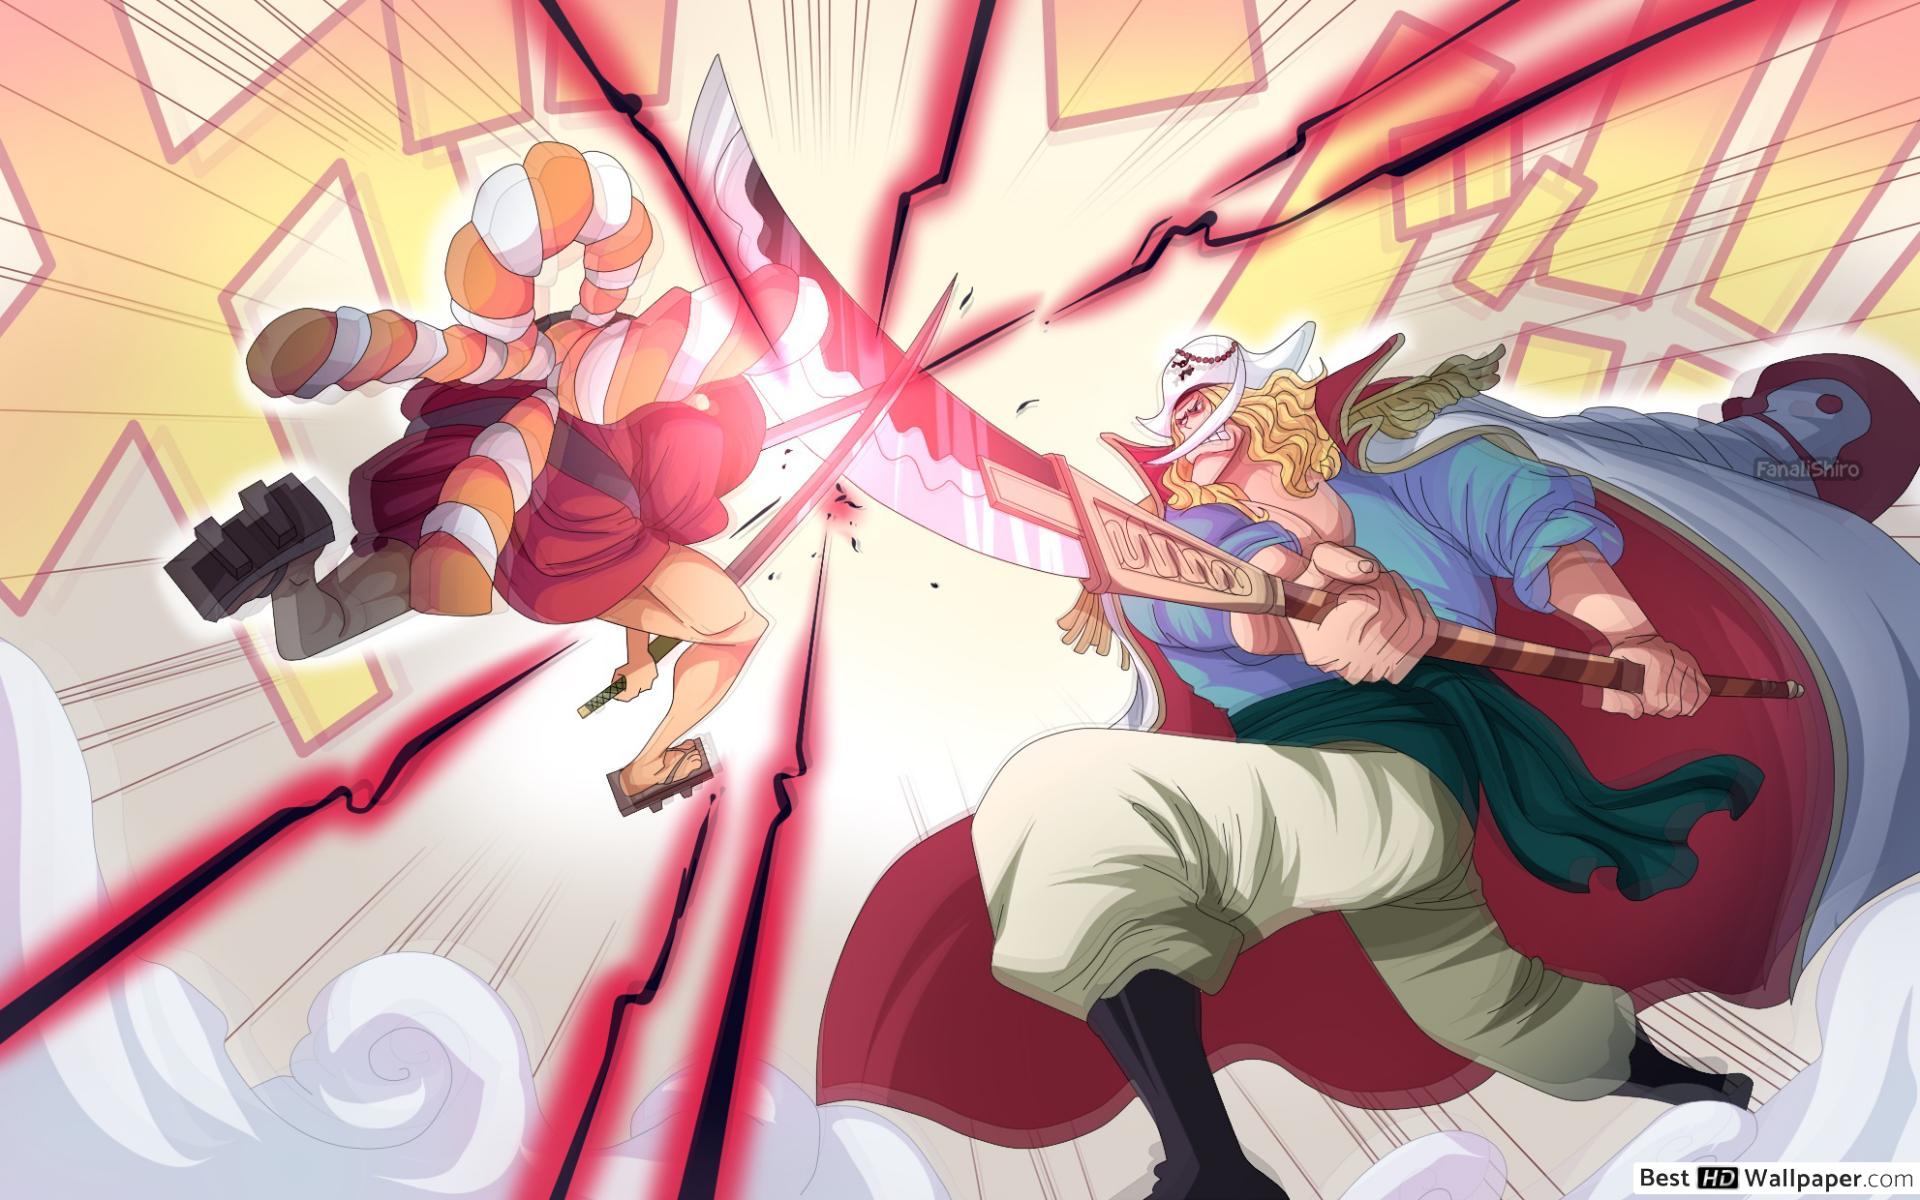 Oden và Râu Trắng là hai nhân vật quen thuộc trong thế giới manga One Piece. Họ đem lại những trải nghiệm đầy mạo hiểm và phấn khích đến với người xem. Hình ảnh này sẽ cho bạn những hình ảnh ấn tượng về khổng lồ Râu Trắng, và những tình huống nguy hiểm mà Oden đã đối mặt.